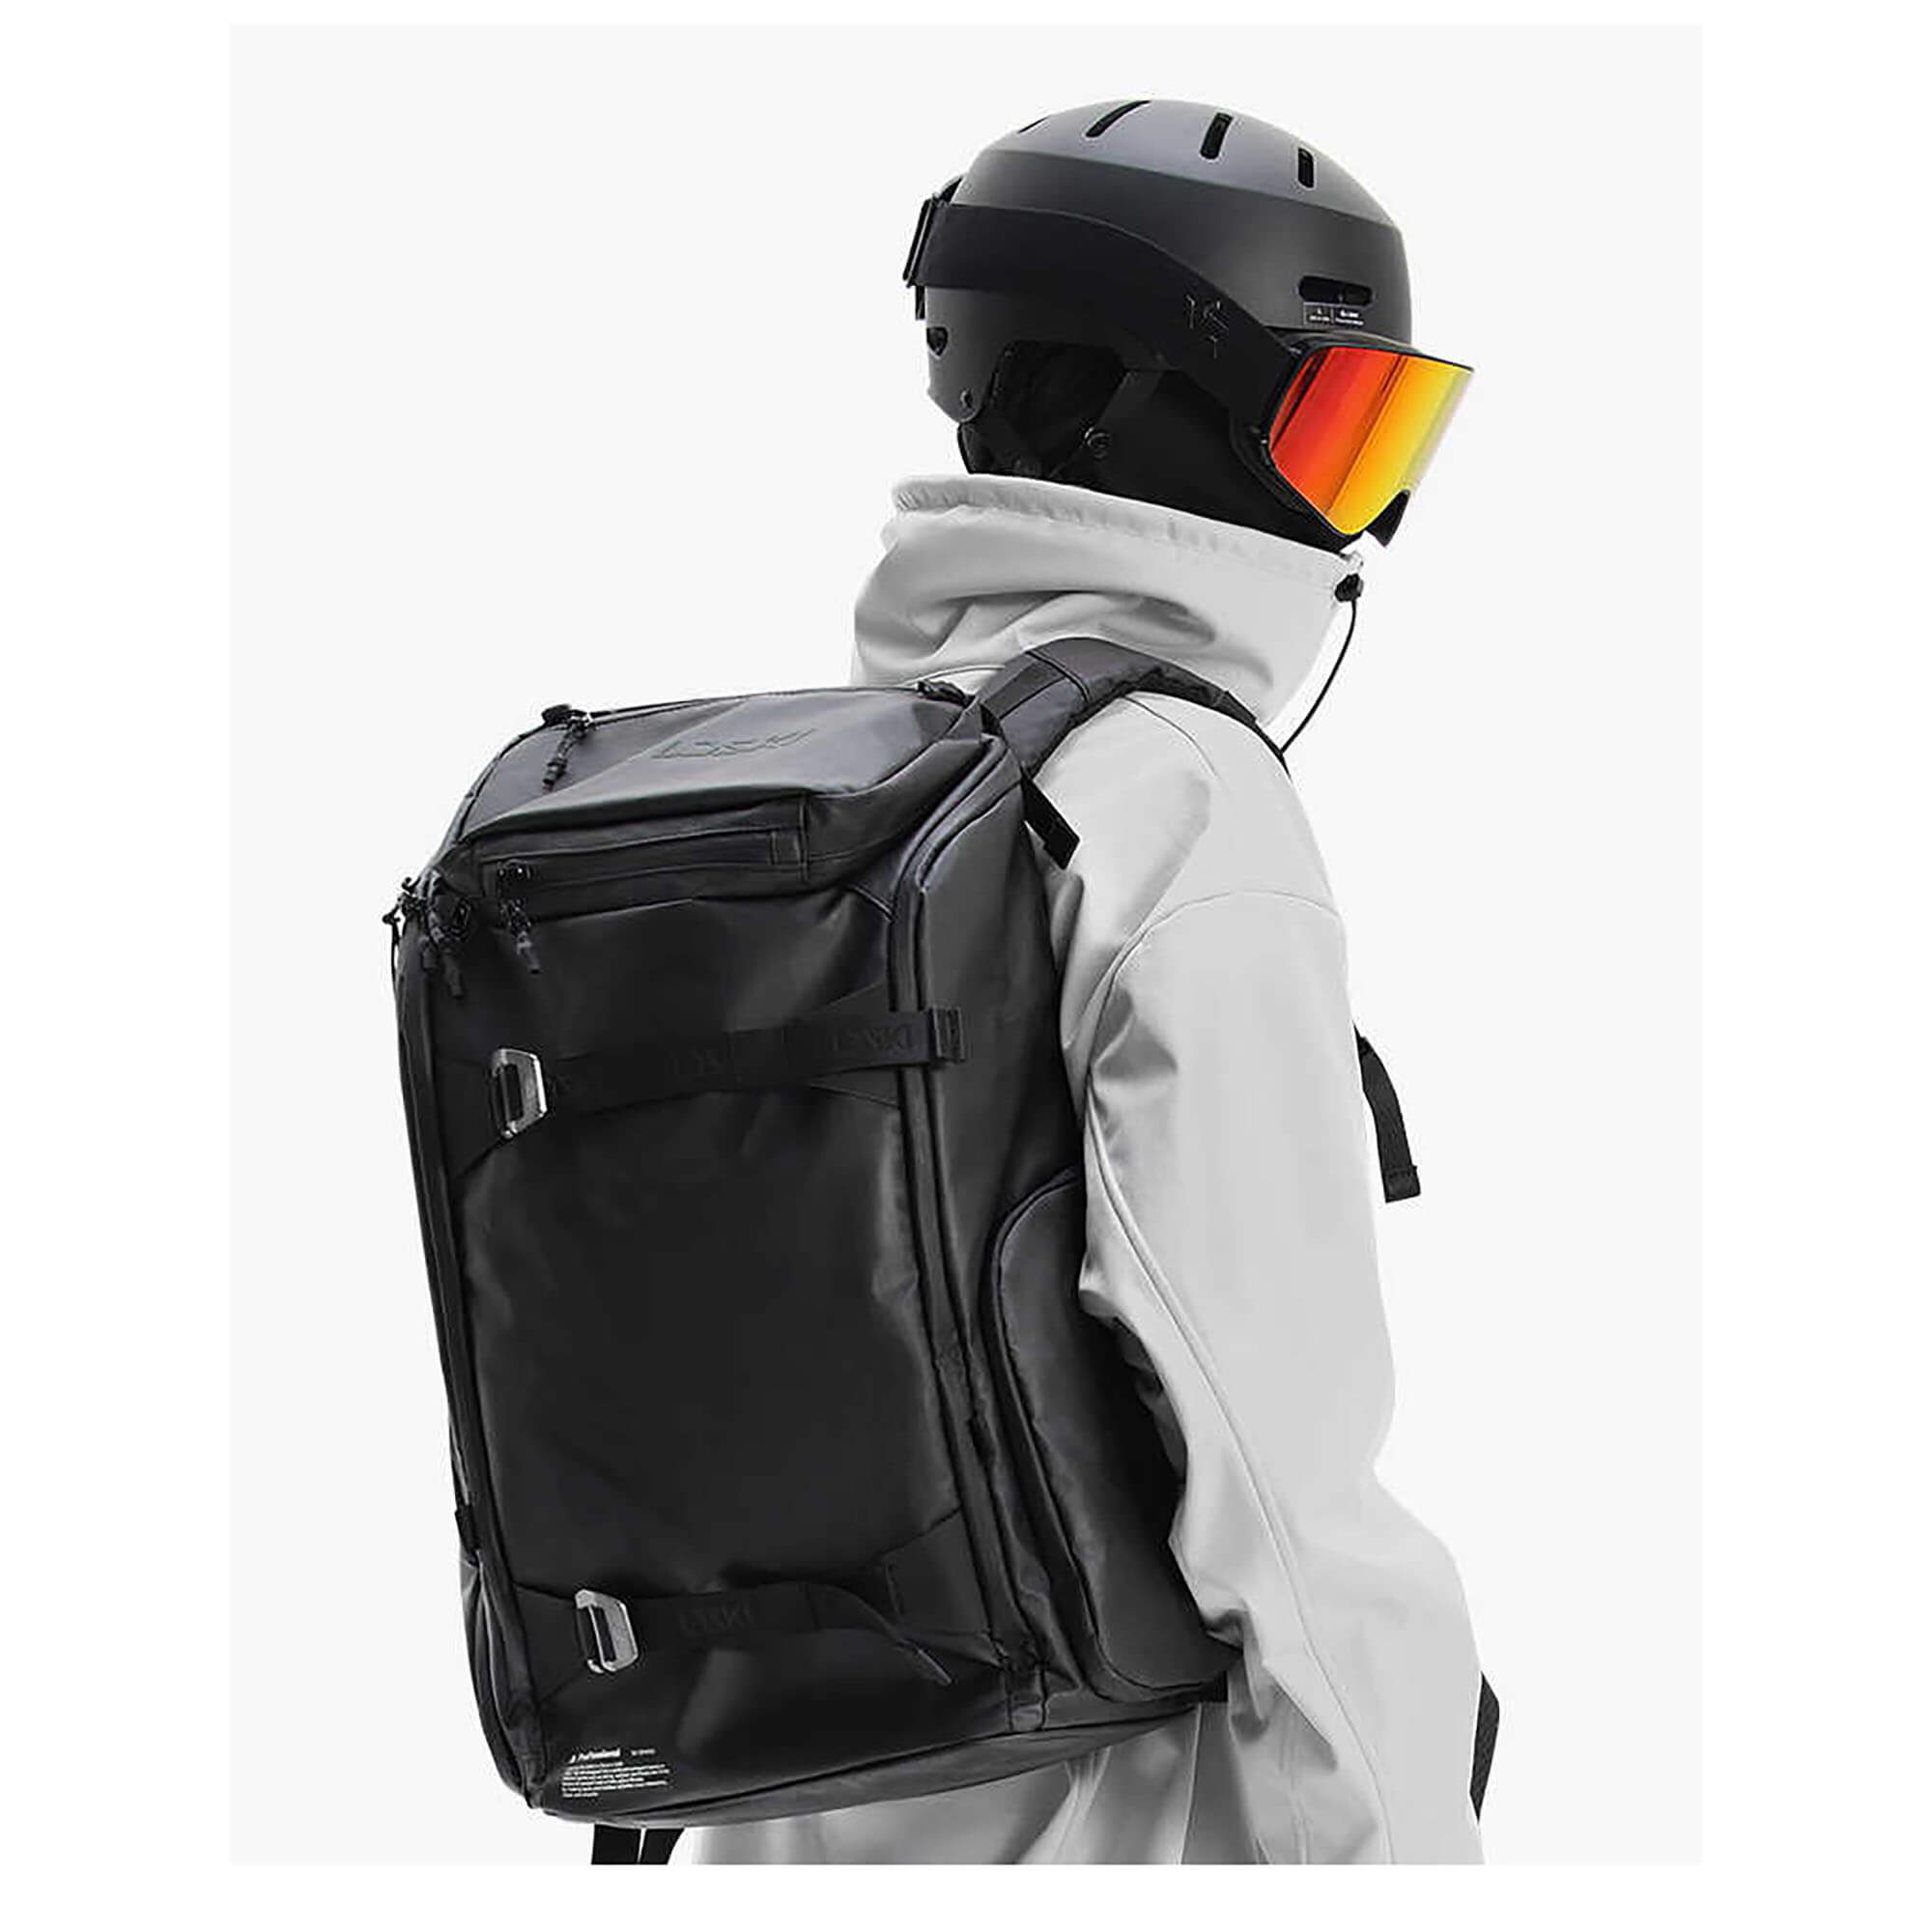 35L Ski Backpack 2.0